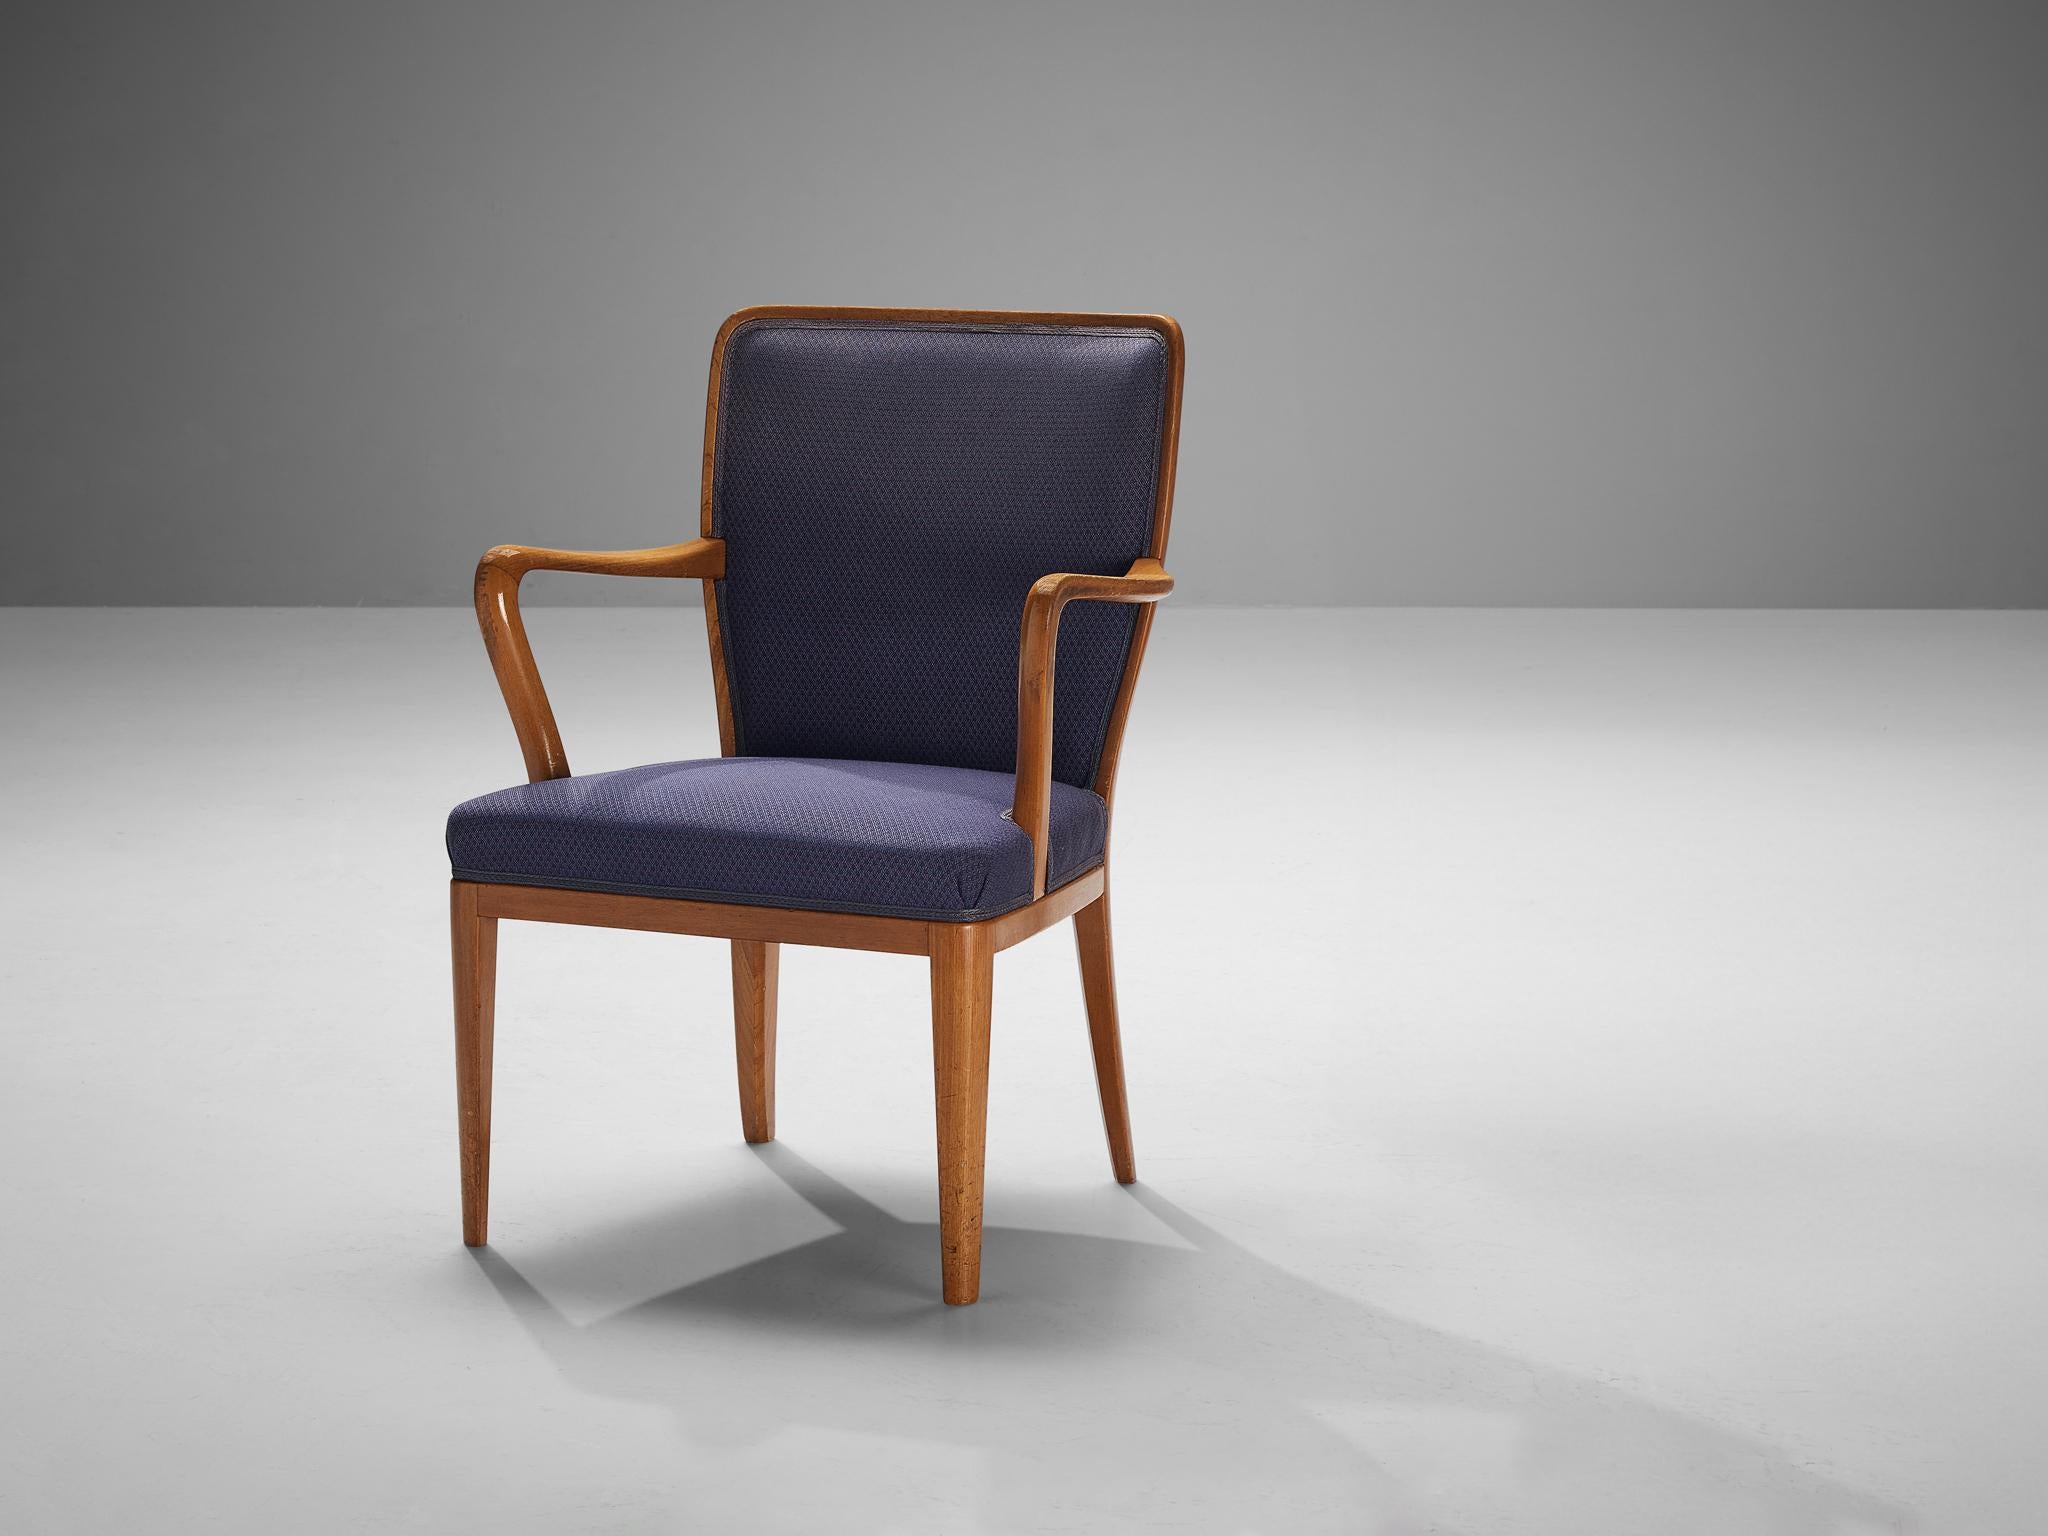 Attribué à Carl Malmsten, fauteuil, teck, tissu, Suède, années 1950.

Chaise de salle à manger en tapisserie violette attribuée à Carl Malmsten (1888-1972). Les lignes et les courbes uniques du design sont frappantes et les pieds en bois effilés